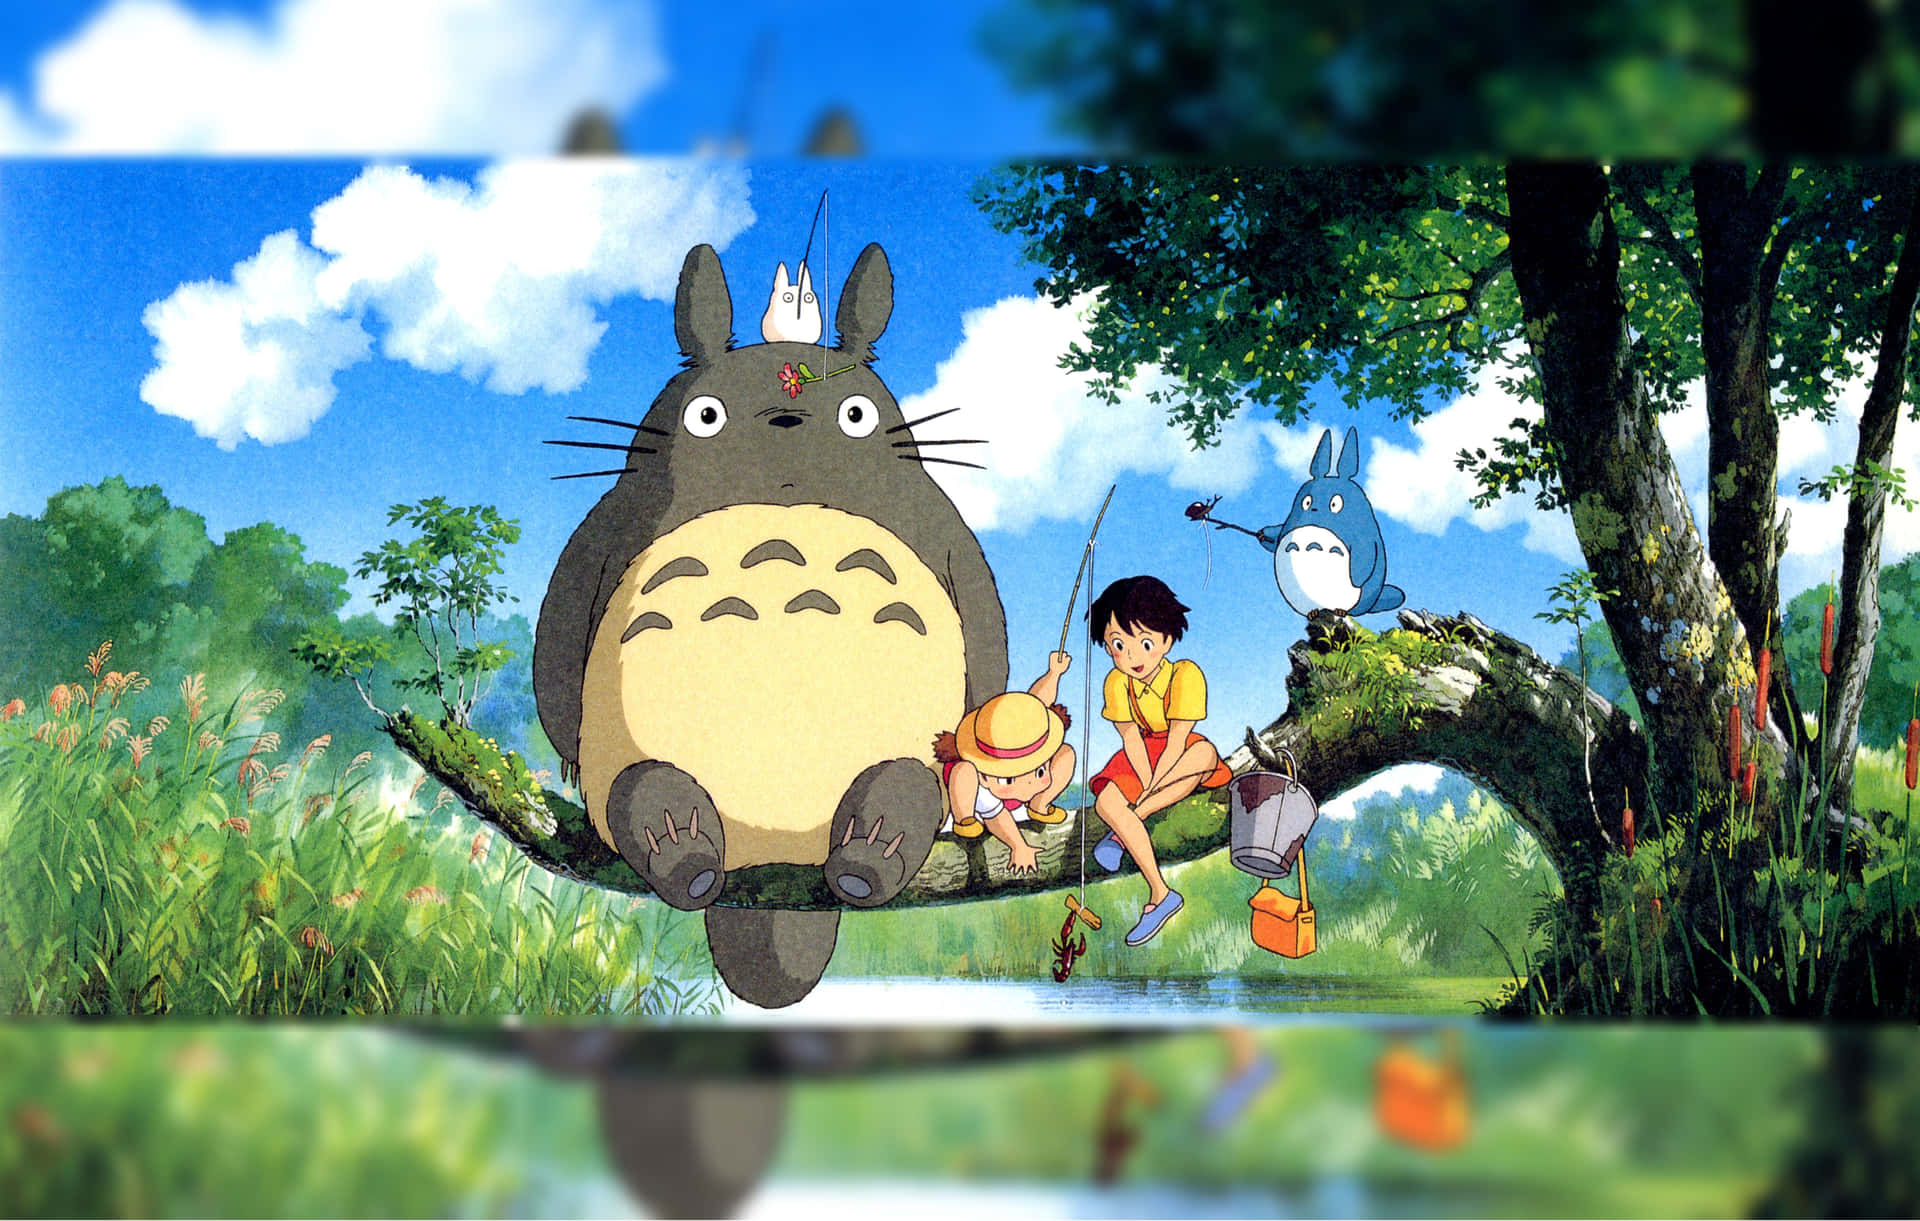 Eingenauerer Blick Auf Totoro